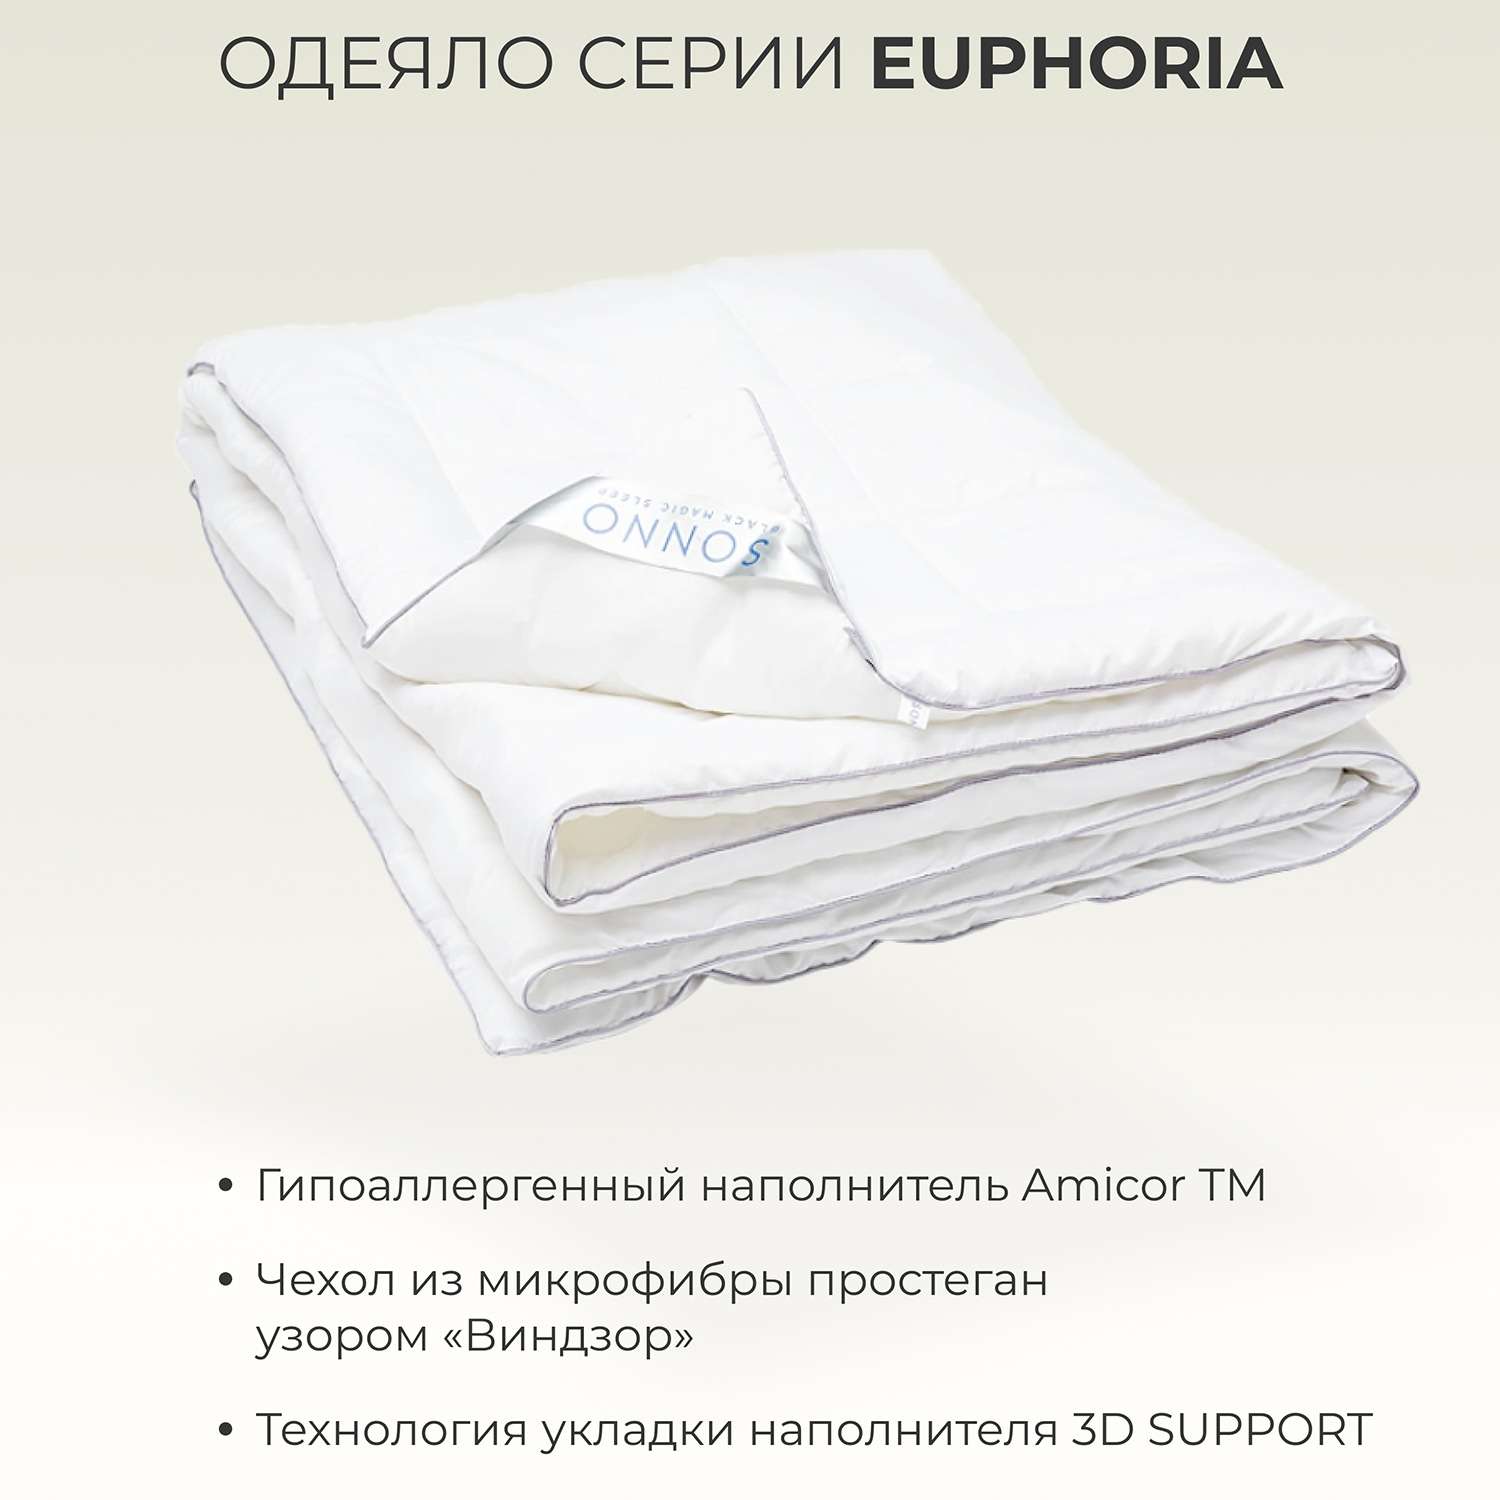 Одеяло SONNO EUPHORIA Евро-размер 200х220 гипоаллергенное наполнитель Amicor TM - фото 2